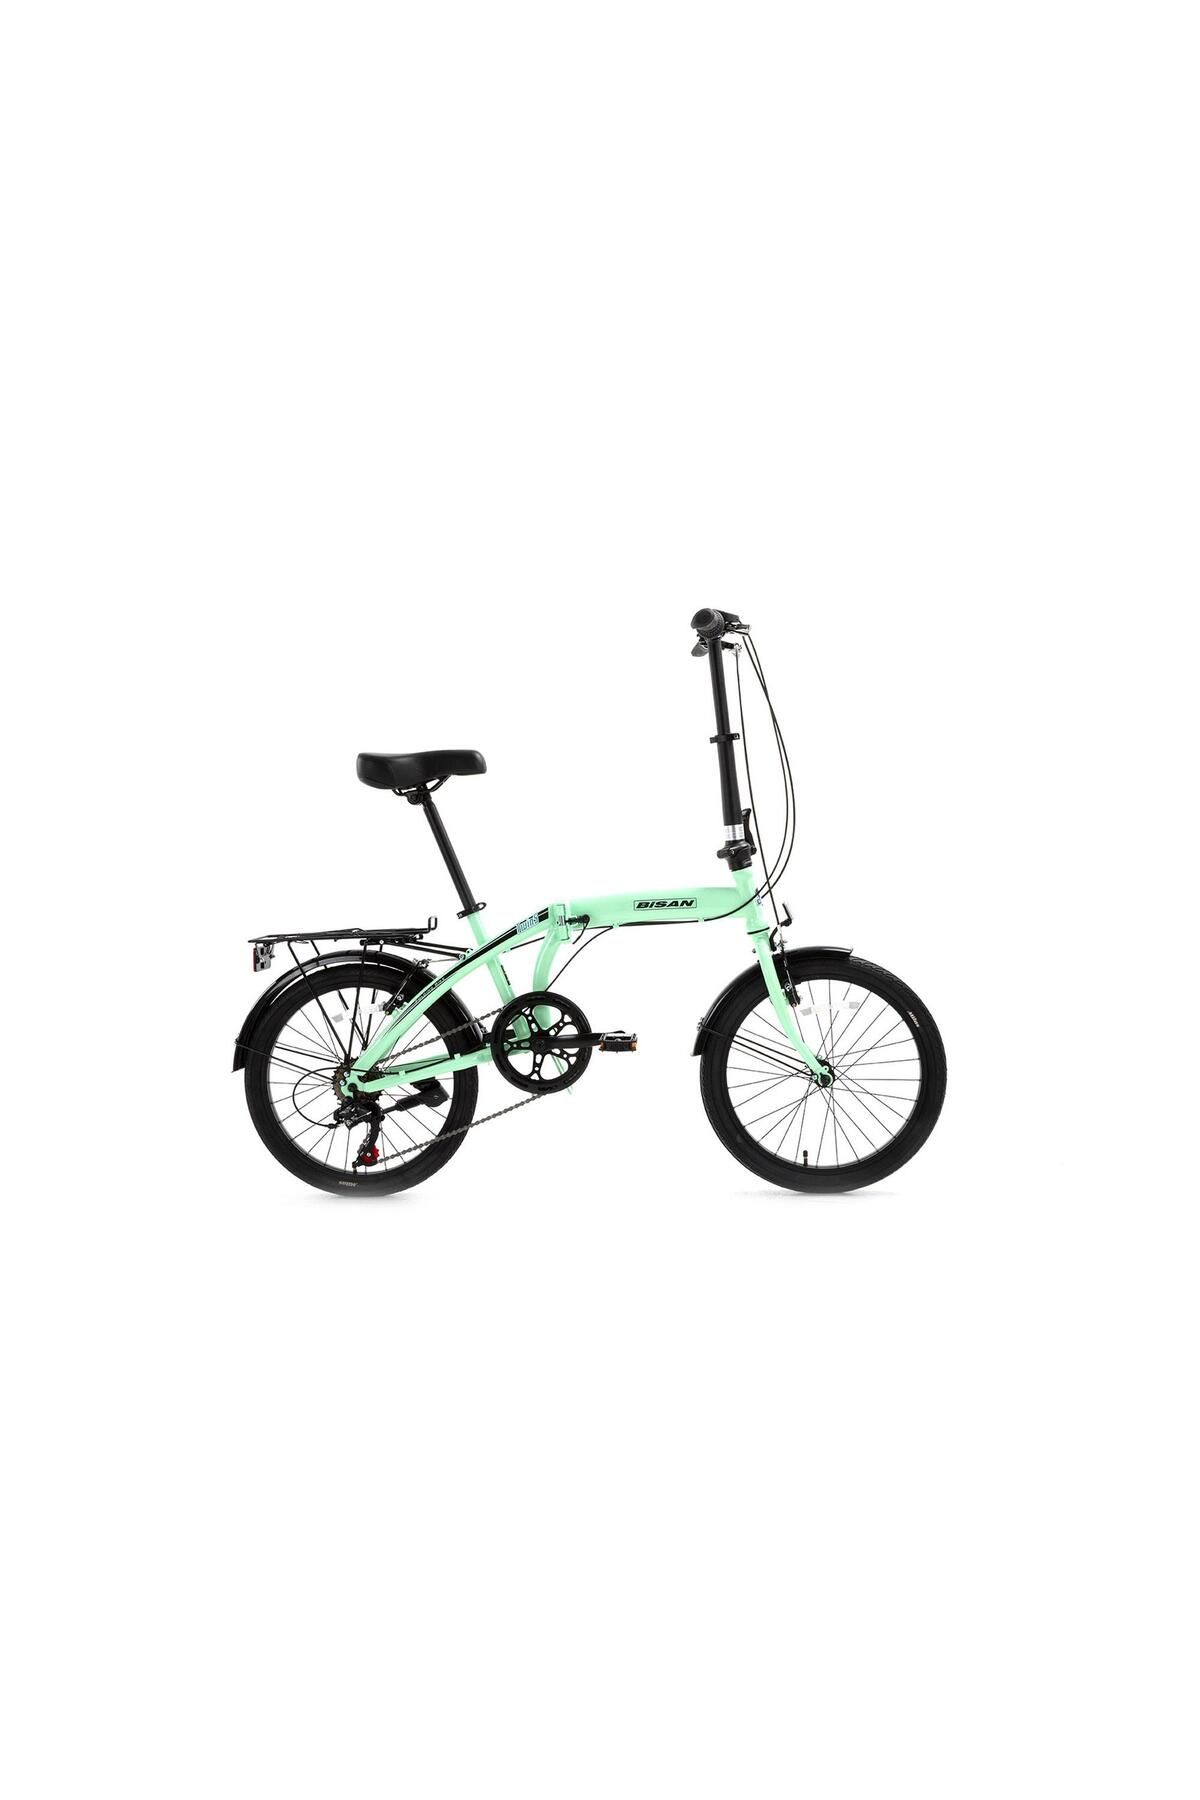 Bisan Twin-s Katlanır Bisiklet V Fren 20 Jant 32 Cm Kadro Mint Yeşil-siyah